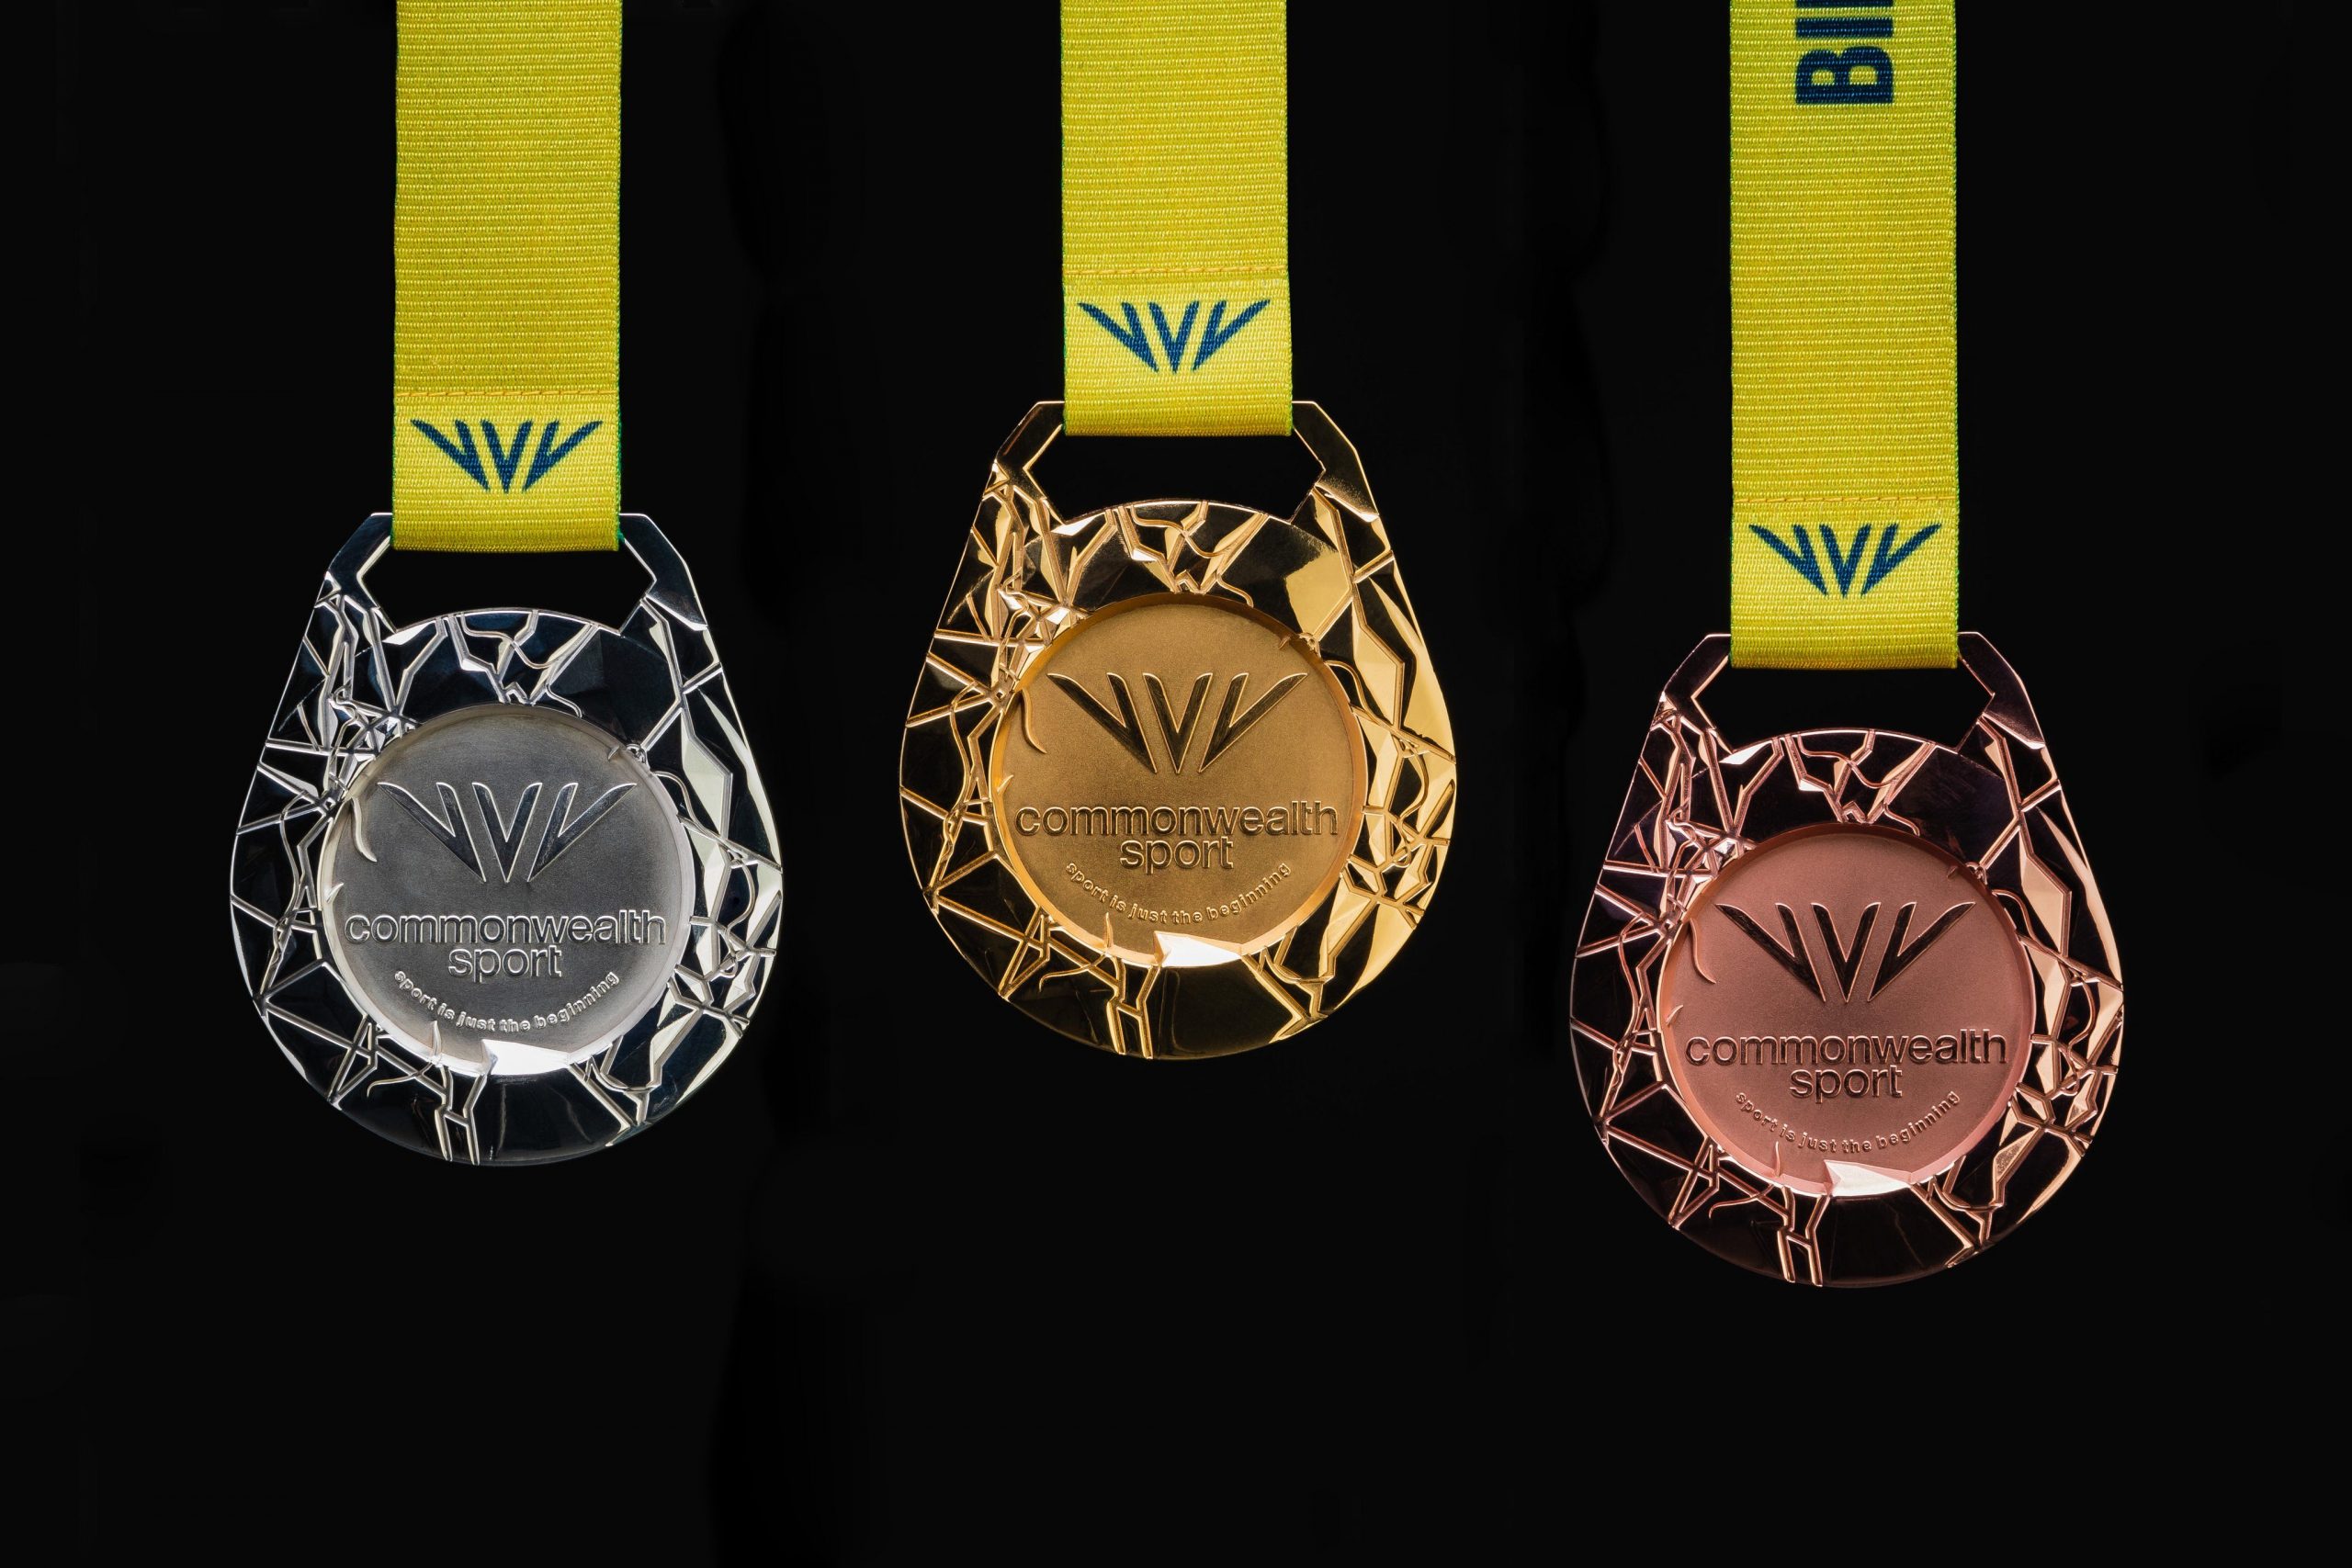 CWG 2022 Medal: शानदार होंगे विजेताओं को मिलने वाले पदक, जानें खासियत